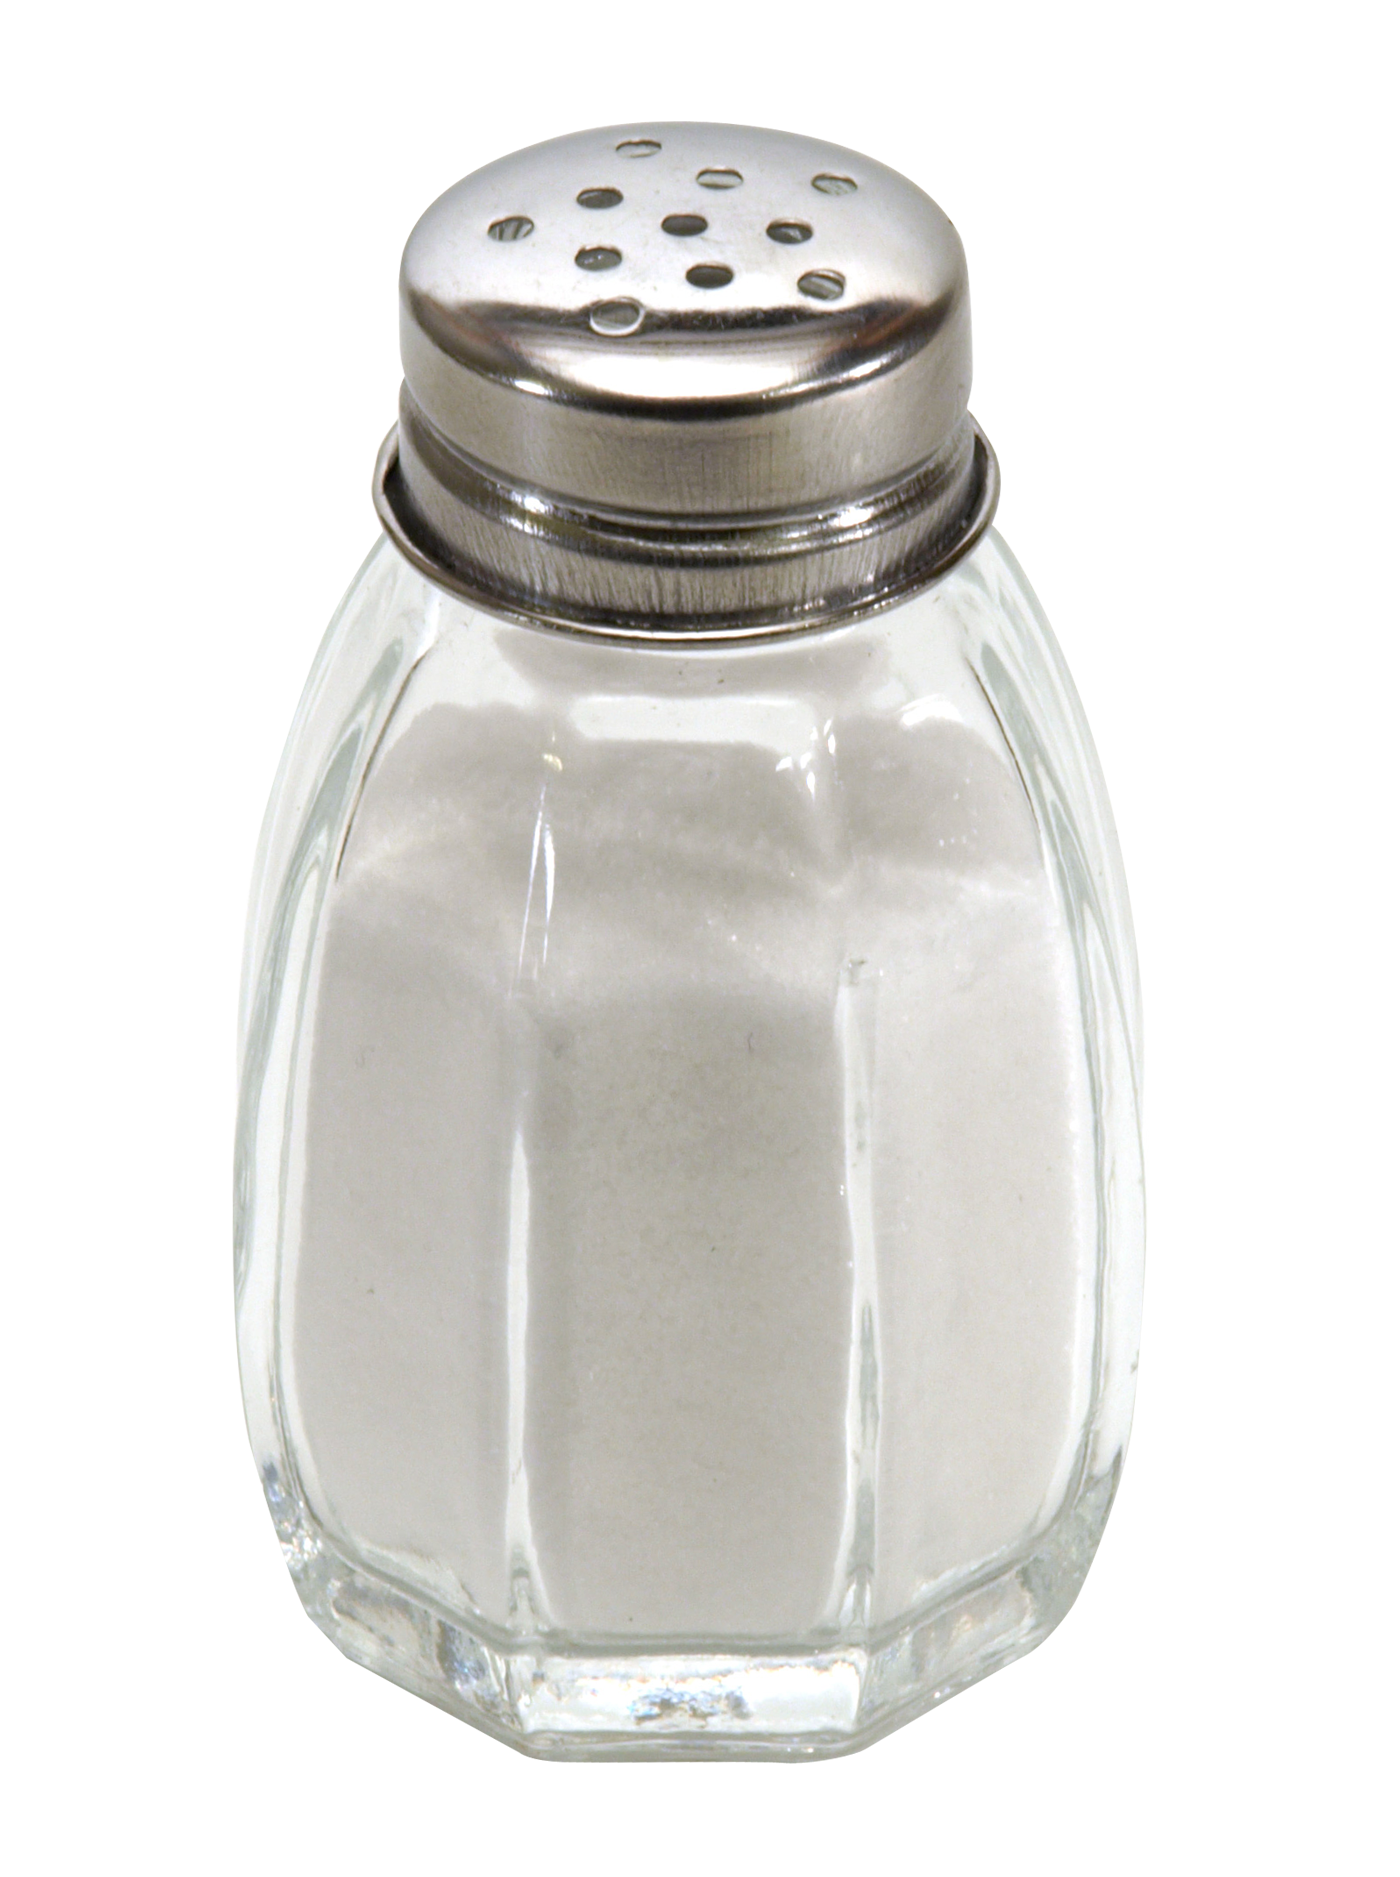 Salt Shaker Png Transparent Image - Salt, Transparent background PNG HD thumbnail